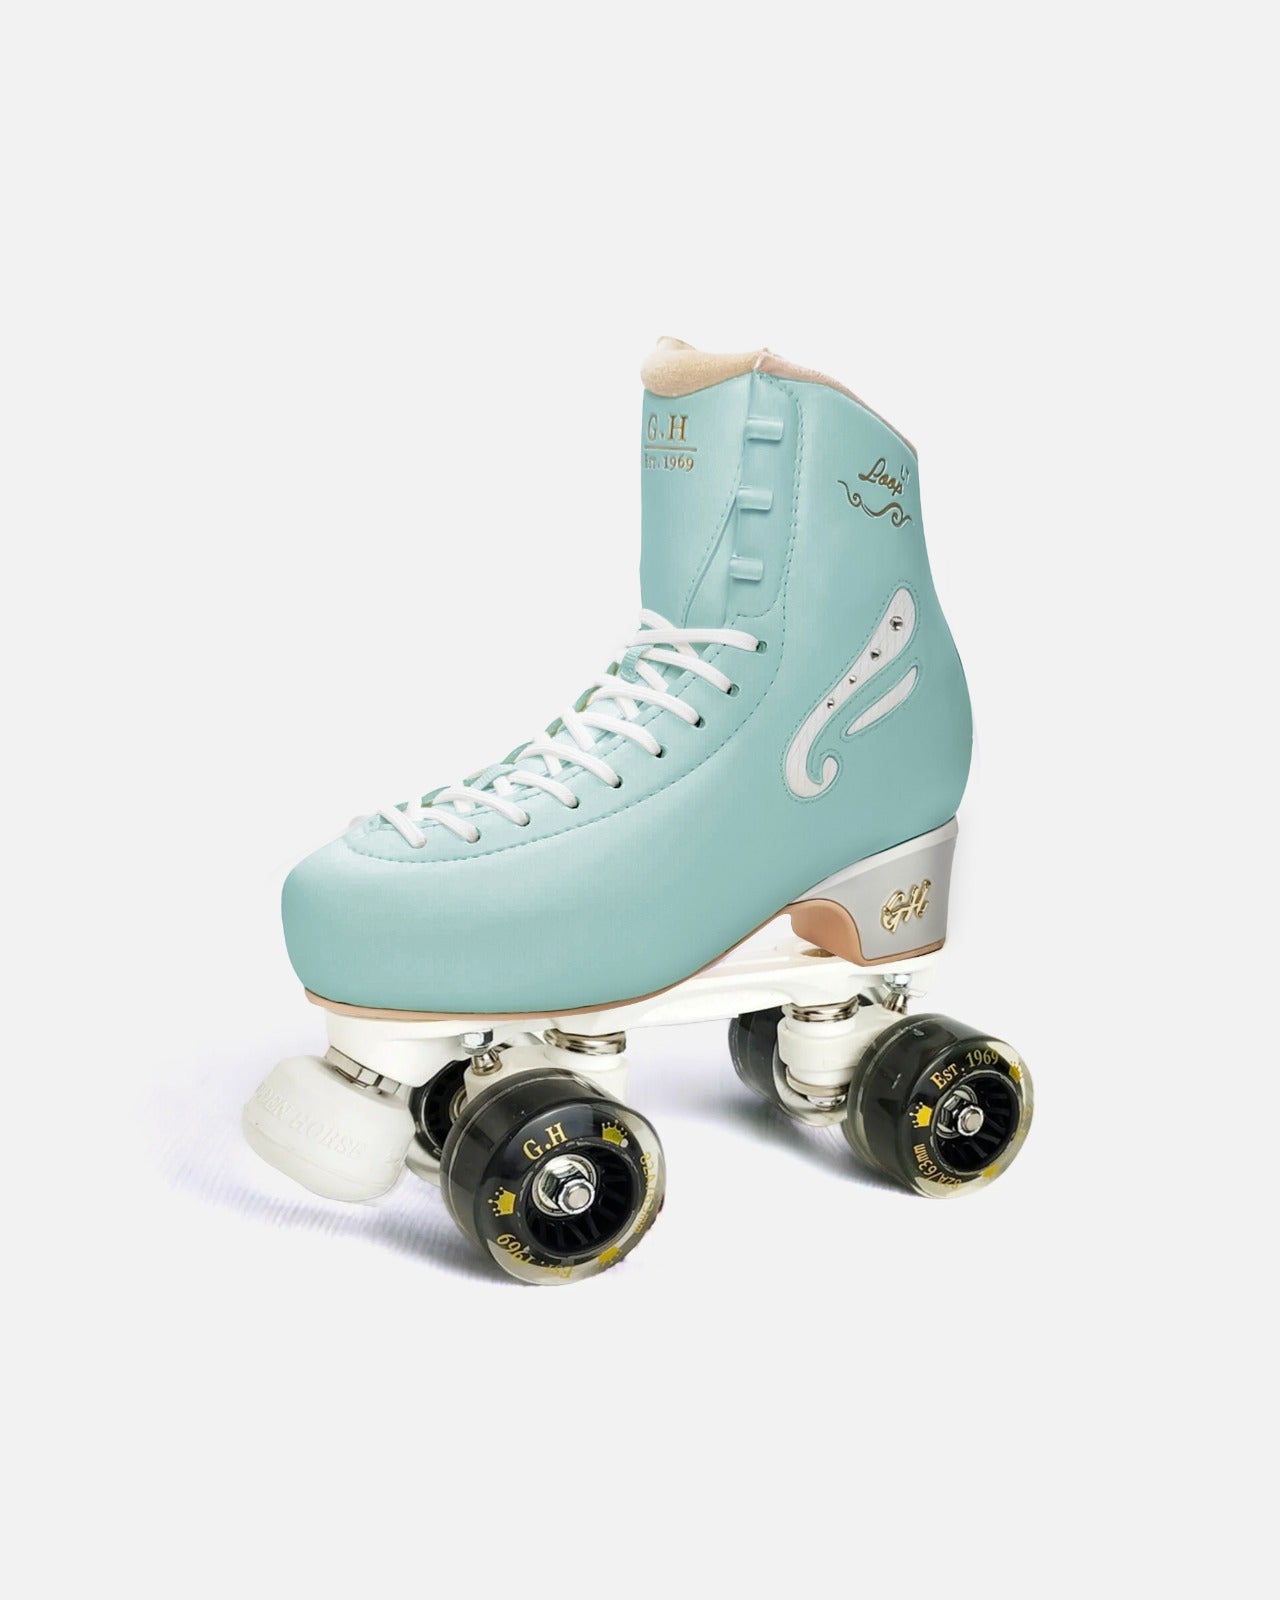 Loop LT Quad Roller Skates